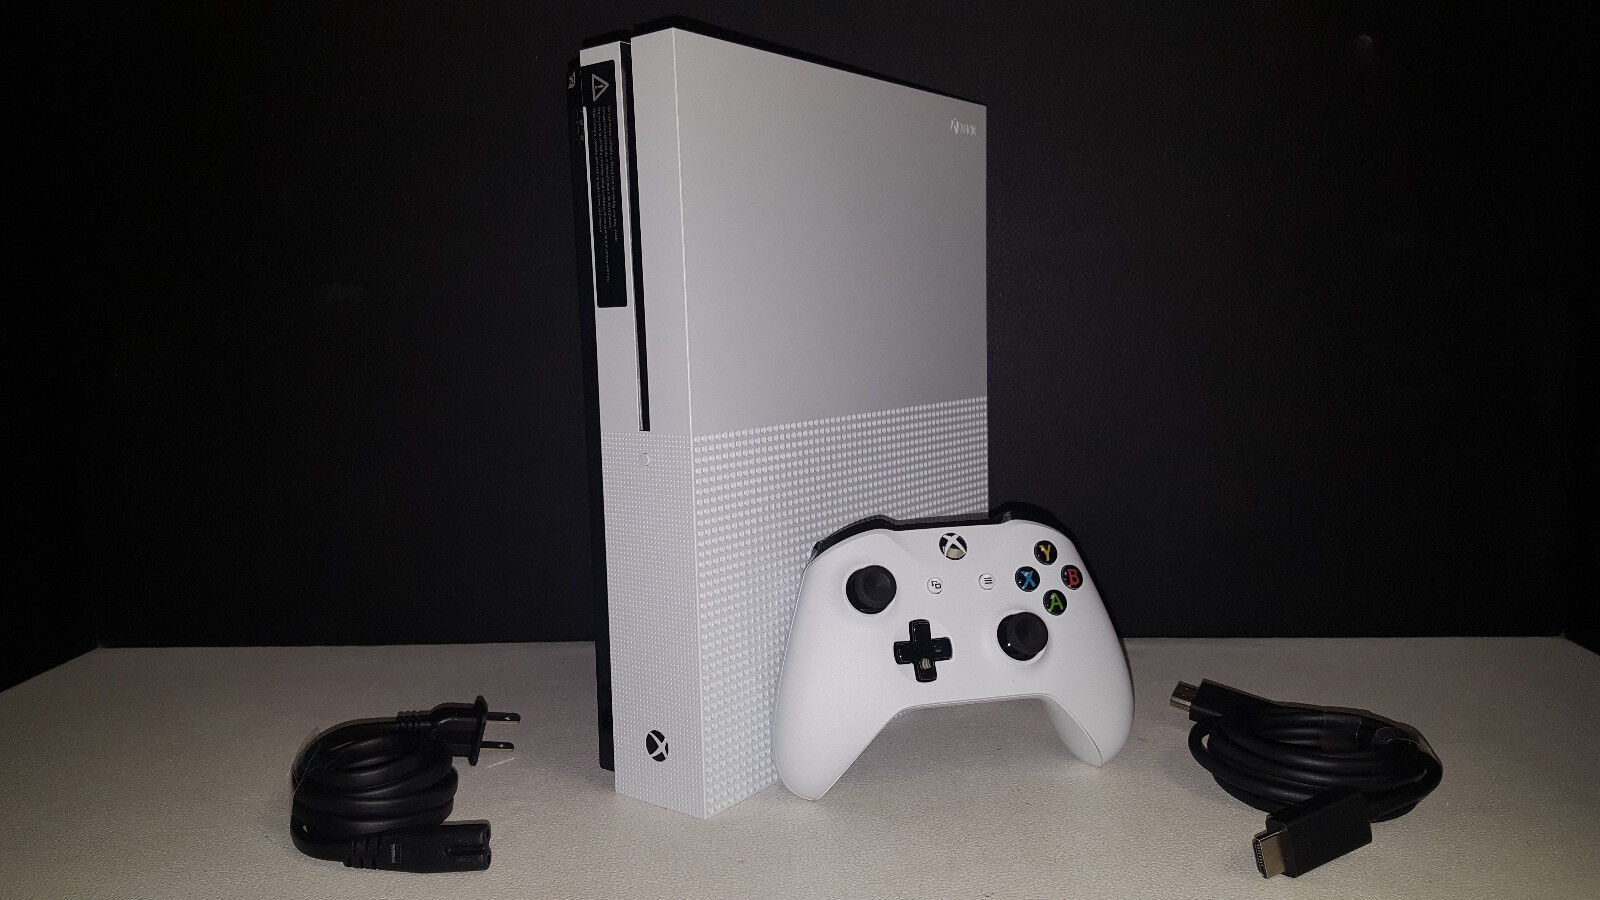 Microsoft Xbox One S 500gb White Console & accessories!  12 month warranty! Microsoft ZQ9-00001, ZQ900001